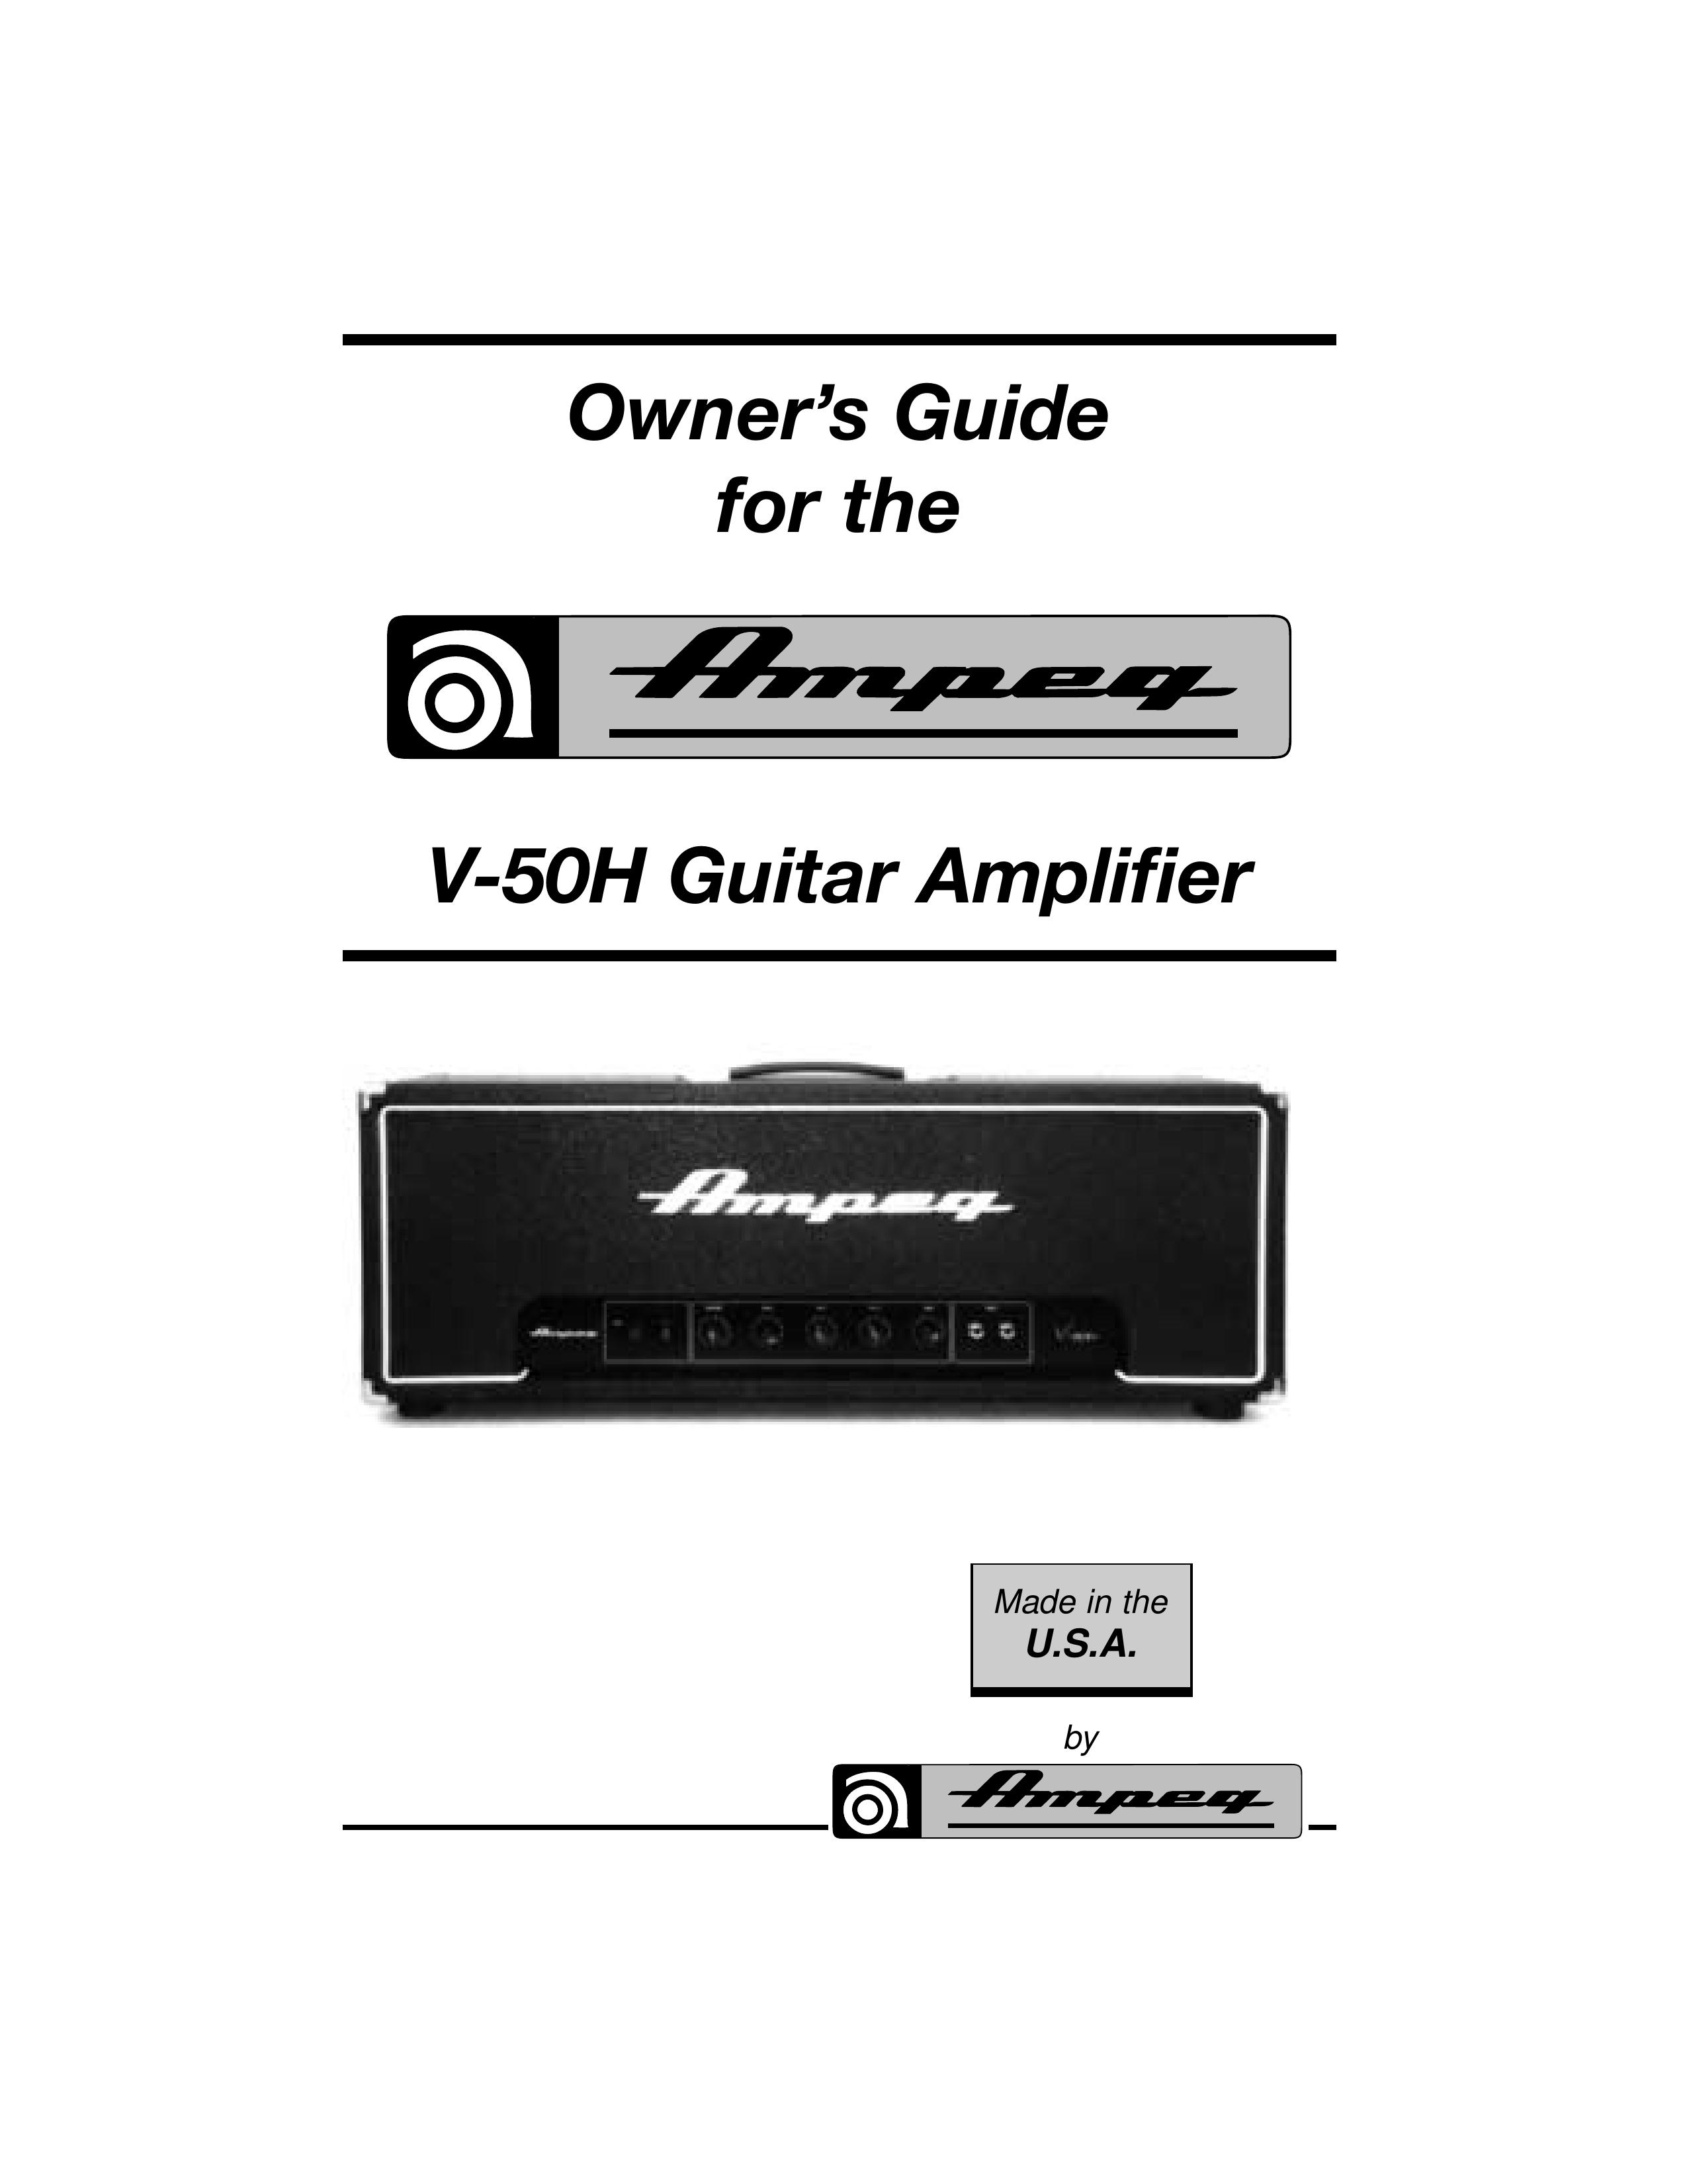 Ampeg V-50H Musical Instrument Amplifier User Manual